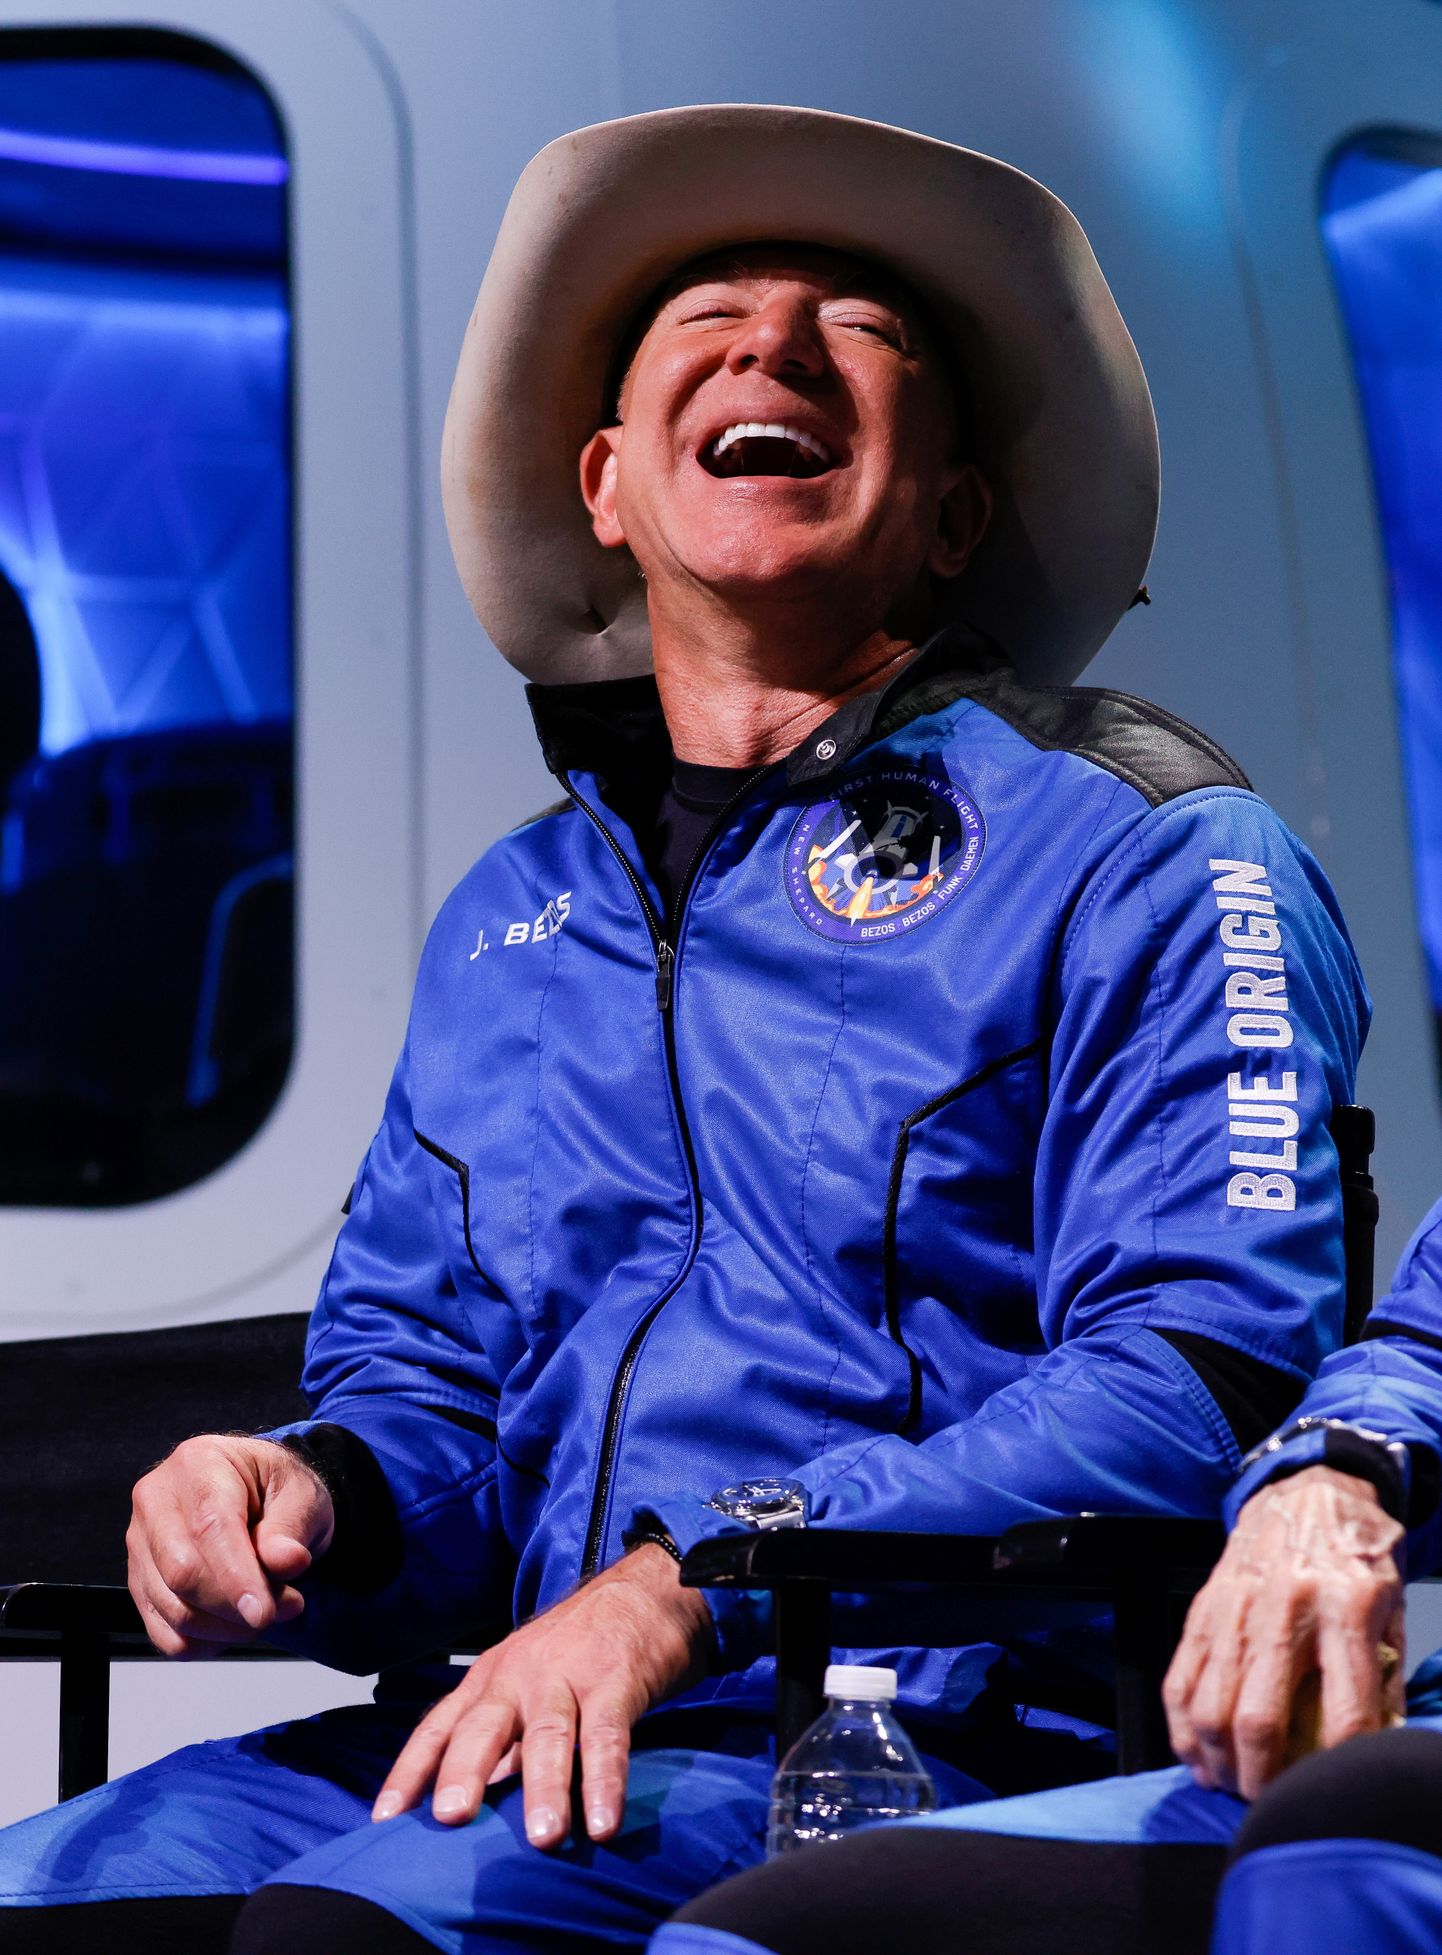 Jeff Bezos 20. juulil 2021 Texases Van Hornis pärast oma esimest kosmoselendu esinemas